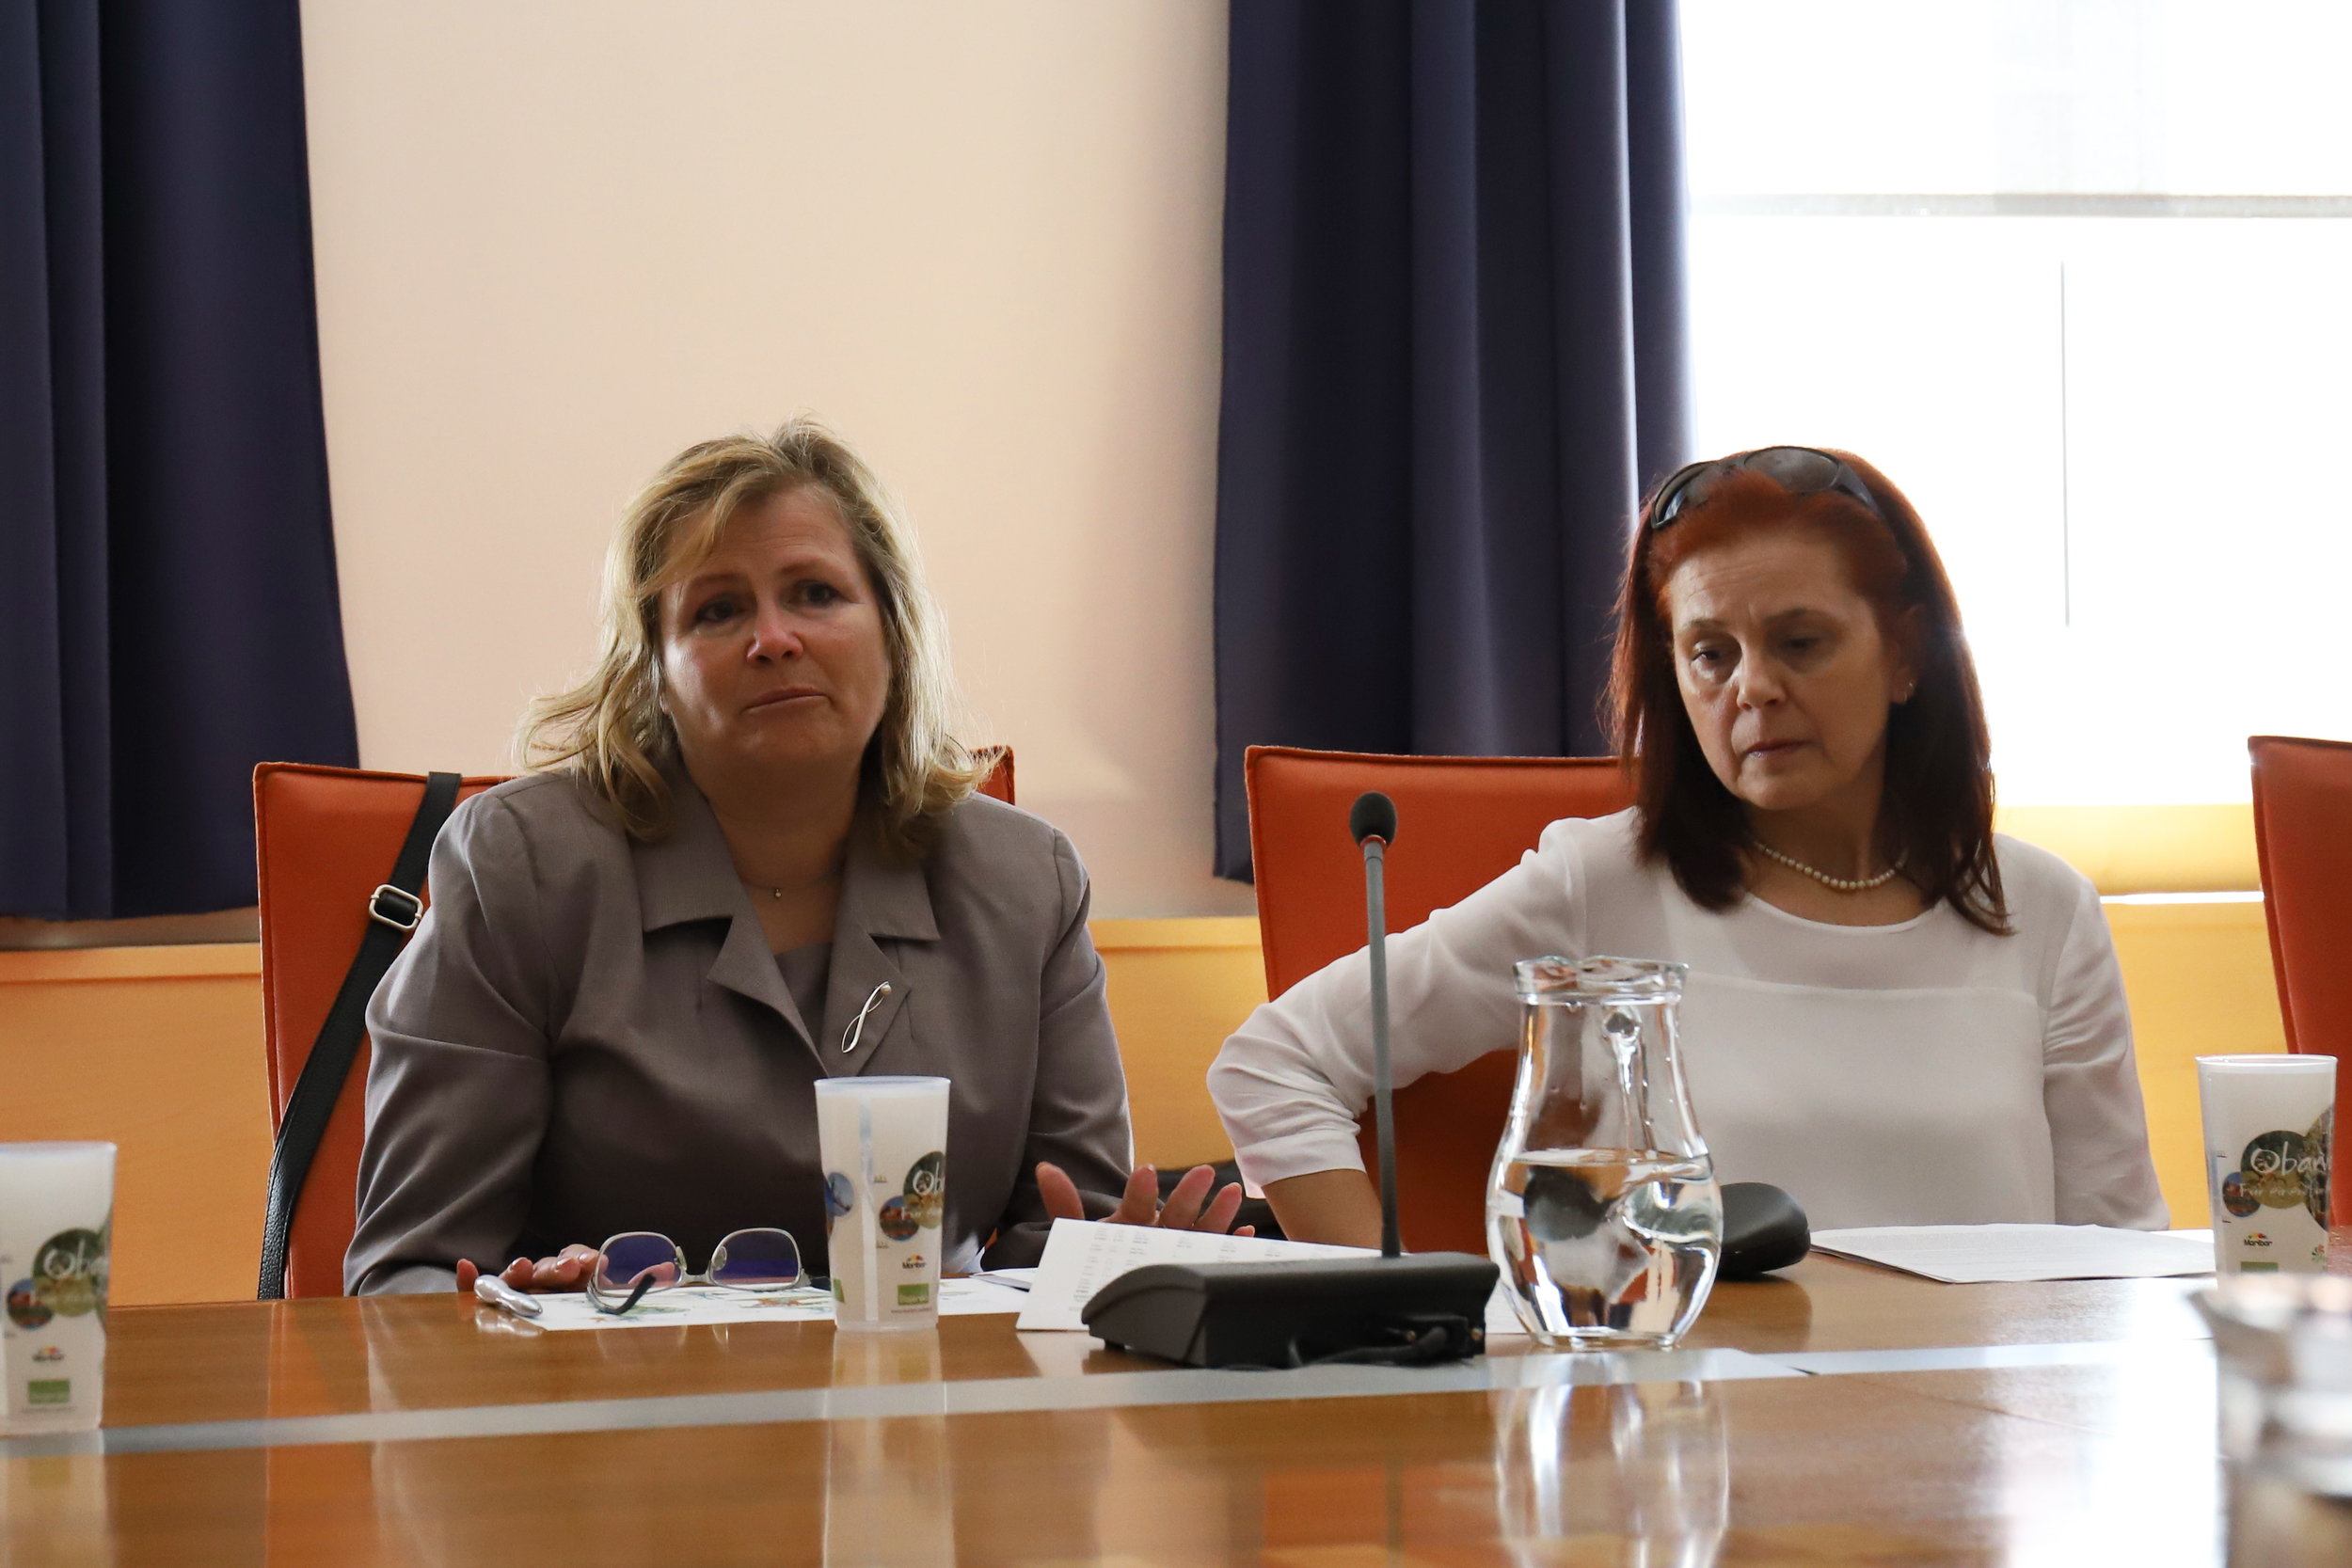   Lilijana Zorko,  vodja Sektorja za zdravstveno in socialno varstvo na MO Maribor in  Tatjana Rebernik , vodja Sektorja za izobraževanje na MO Maribor 